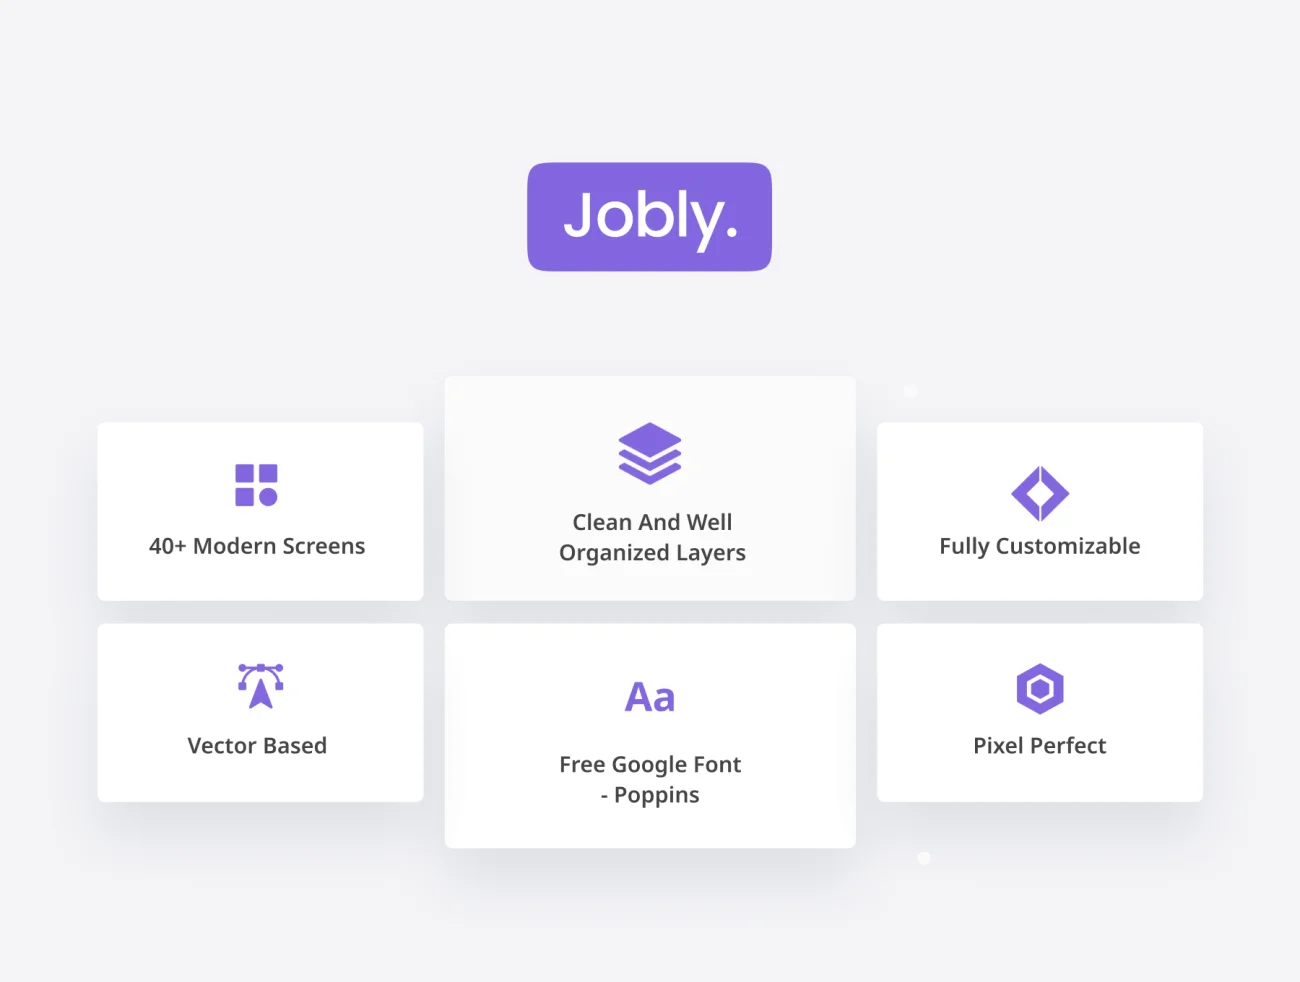 35屏求职招聘应用UI设计套件素材 Jobly - Job Finder App UI KIT .figma-UI/UX、ui套件、主页、介绍、卡片式、图表、应用、聊天、表单-到位啦UI